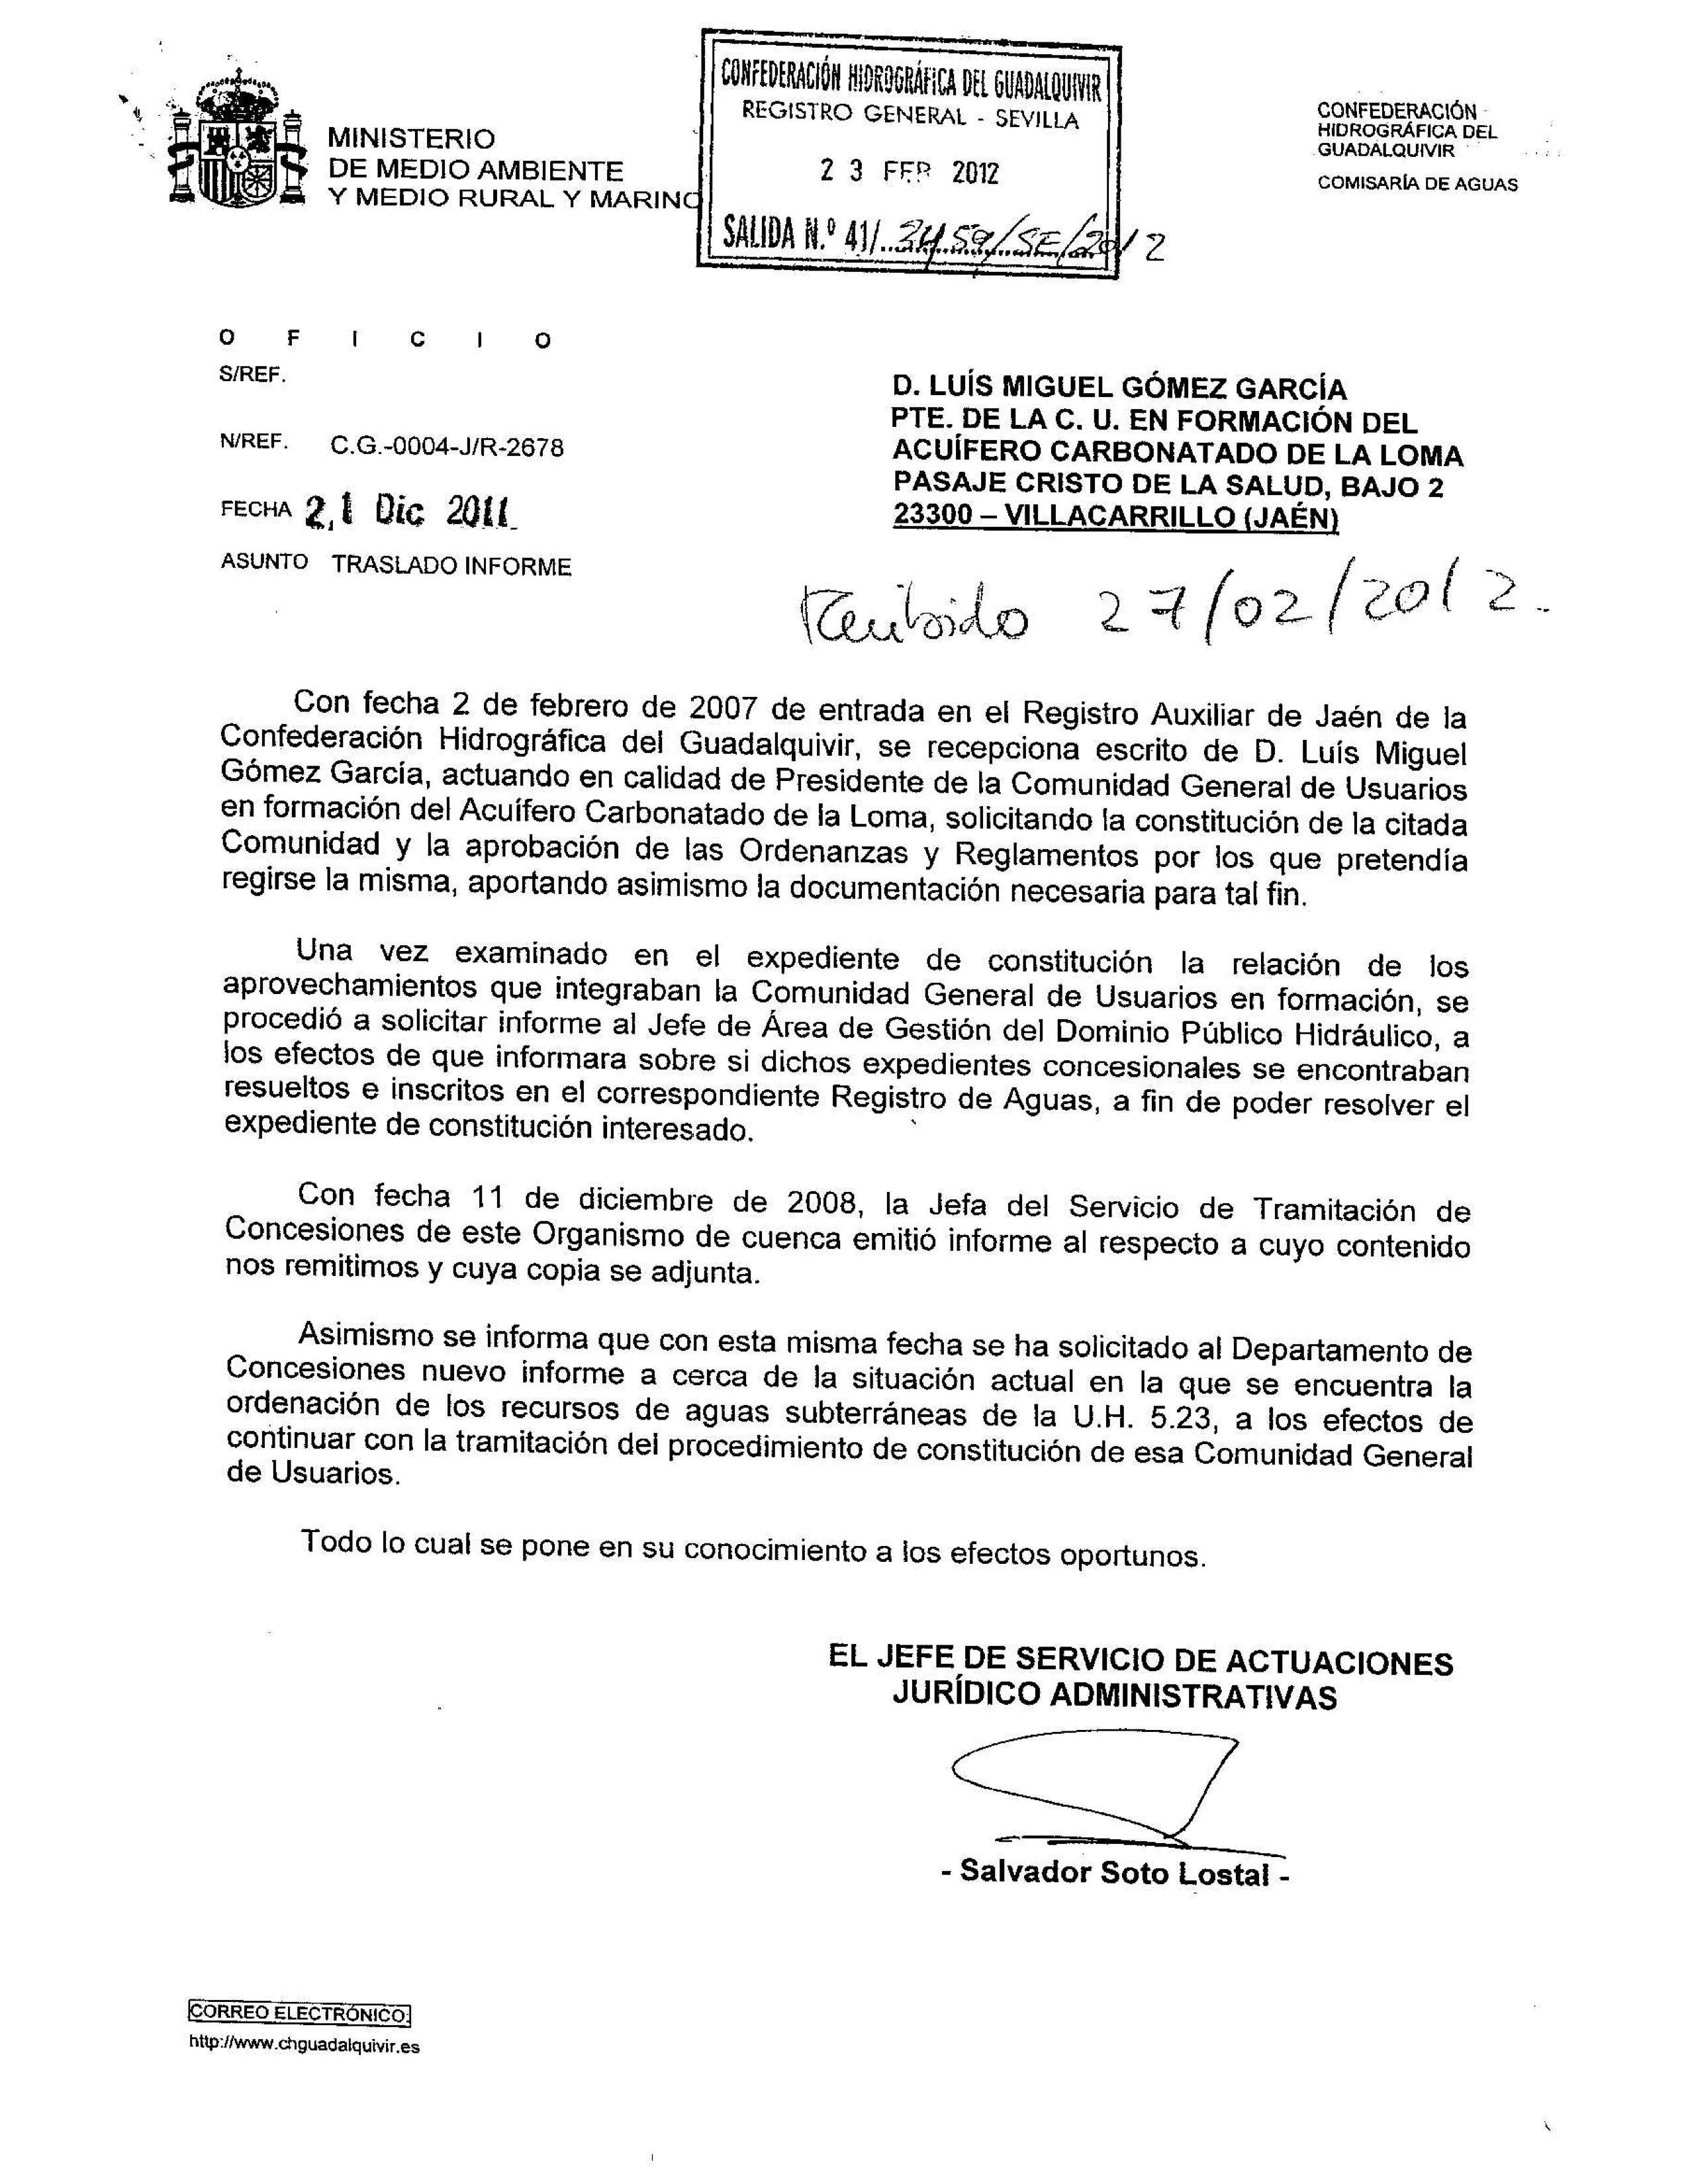 Respuesta de la CHG, en diciembre de 2011, a la petición de constitución de la Comunidad General de Usuarios del acuífero carbonatado de La Loma efectuada en febrero de 2007.